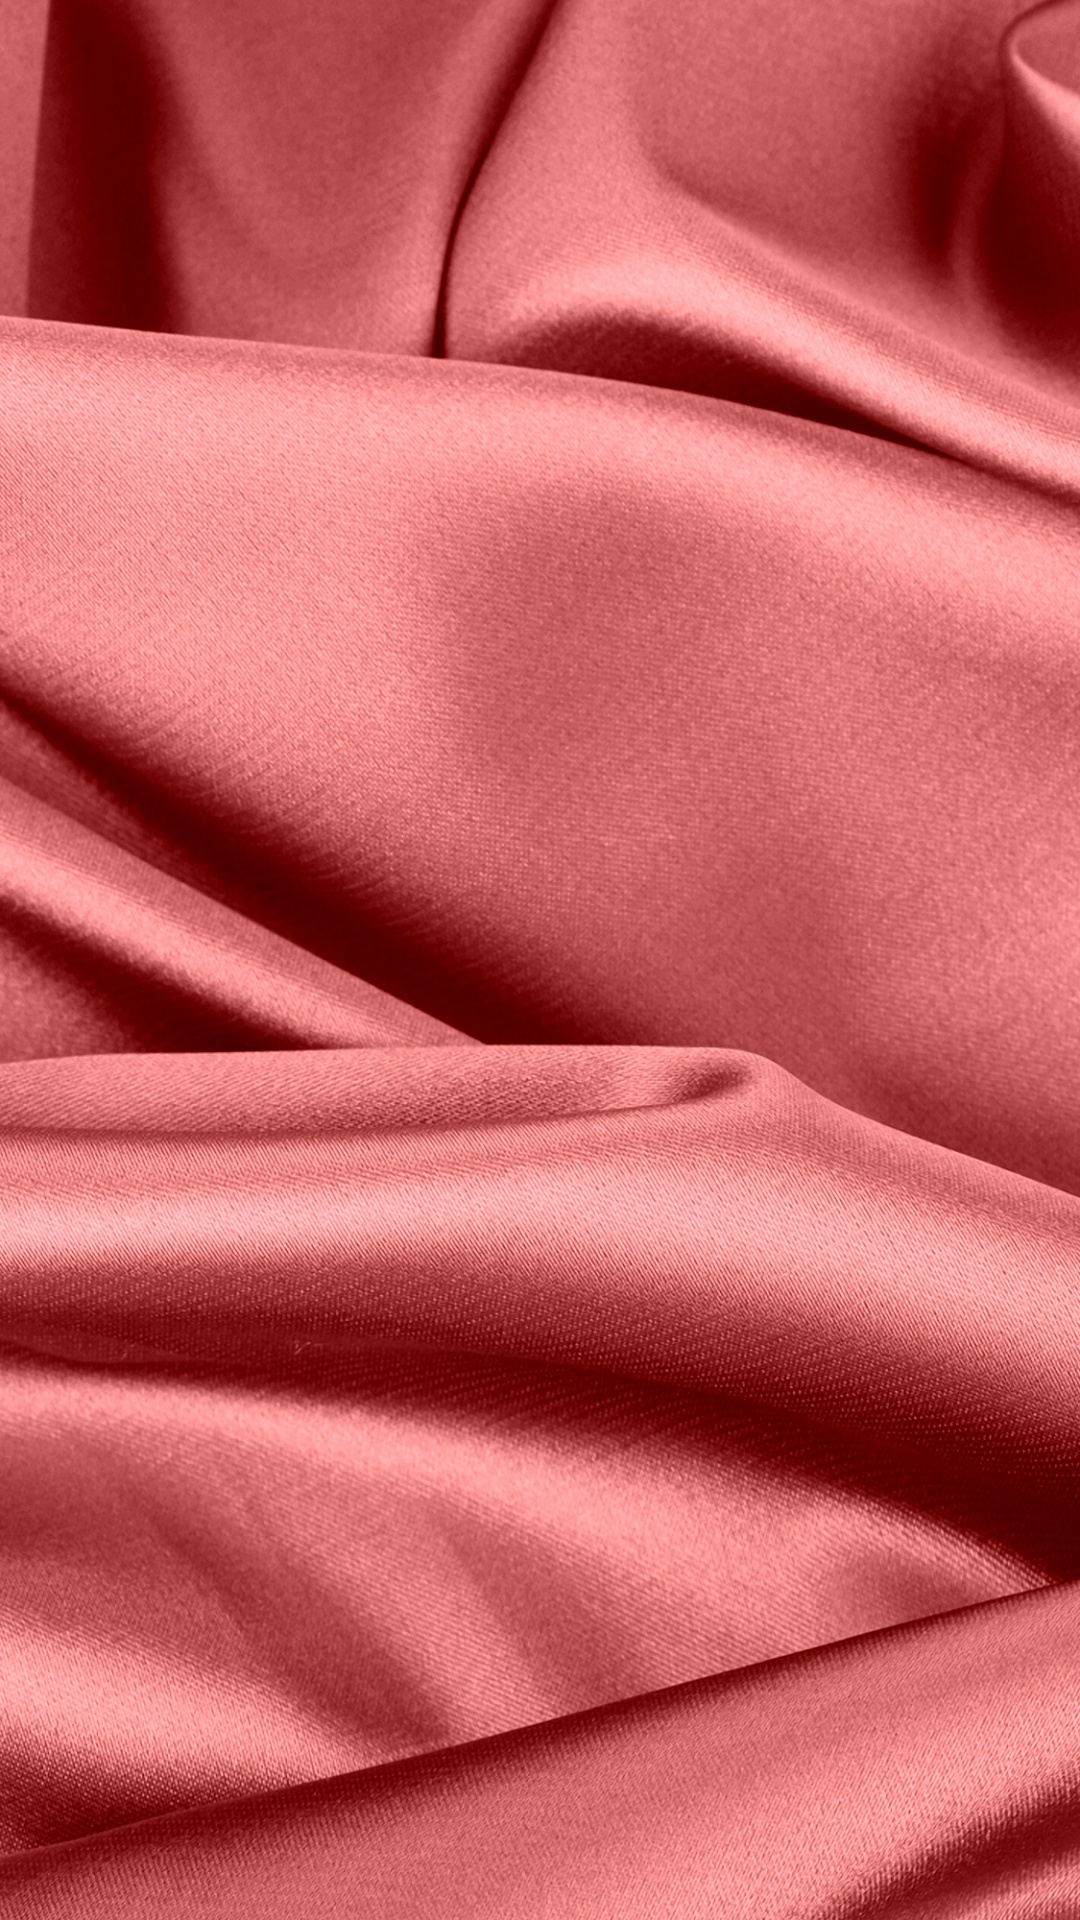 Textil Rojo en Fotografía de Cerca. Wallpaper in 1080x1920 Resolution